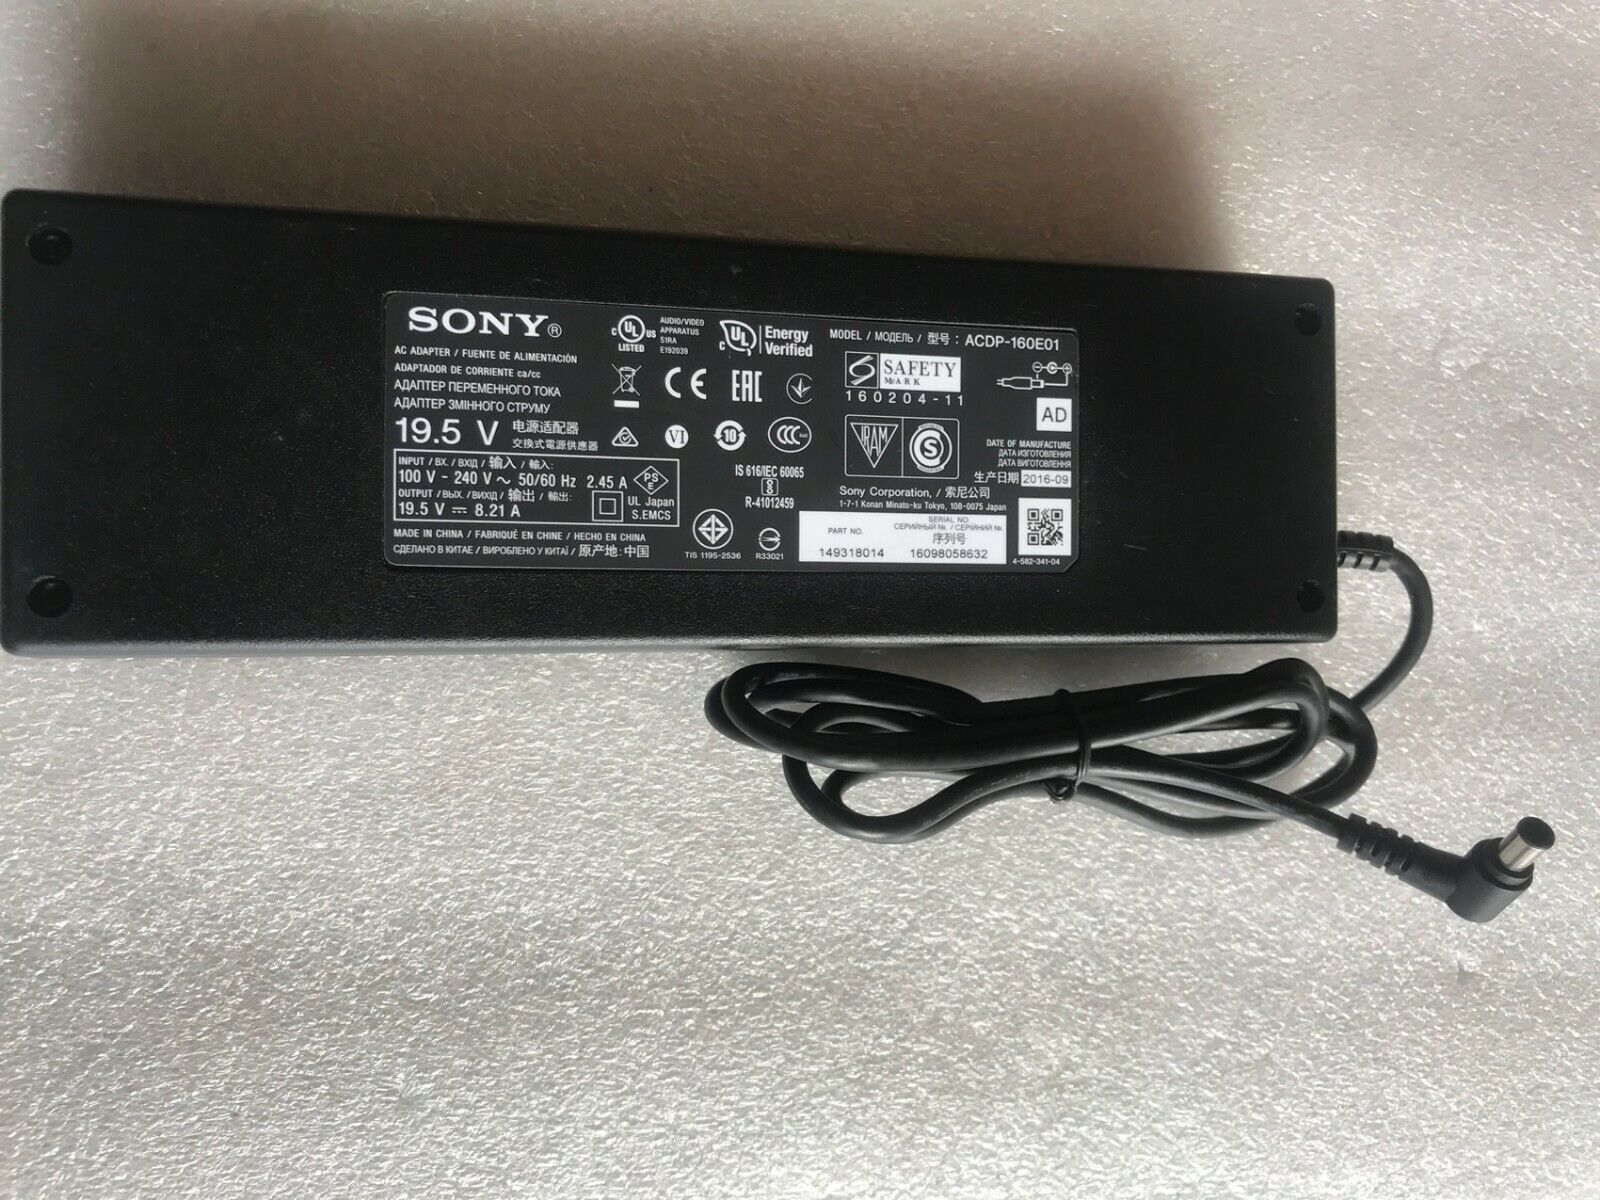 *Brand NEW* Original Sony 19.5V Sony Bravia XBR-55X850D ACDP-160E01 TV AC/DC Adapter